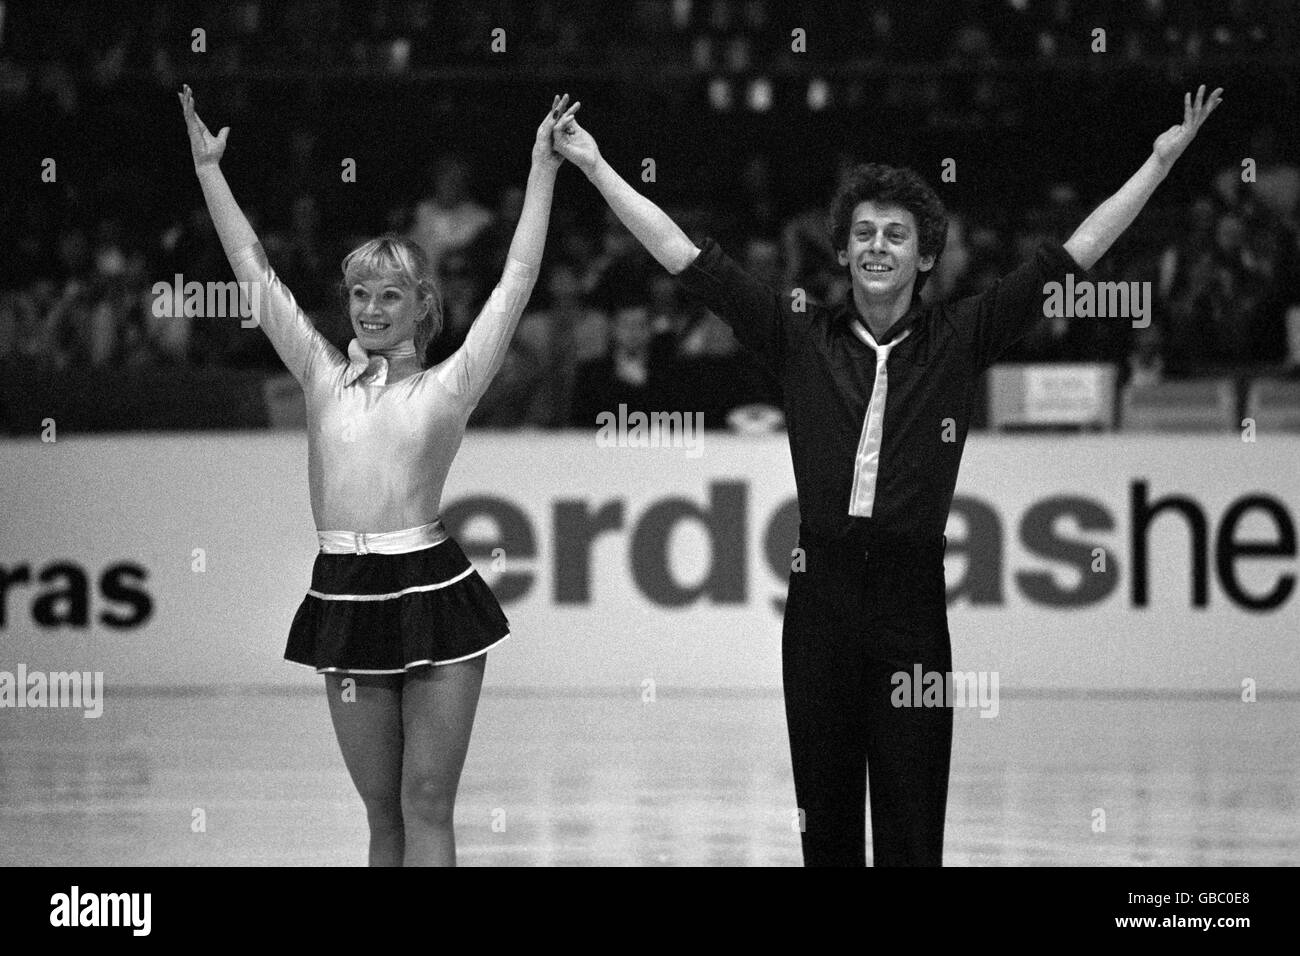 Die Briten Nicky Slater und Karen Barber, die in Abwesenheit der Weltmeister Jayne Torvill und Christopher Dean die Fahne tragen, liegen an zweiter Stelle bei den European Ice Dance Championships. Stockfoto